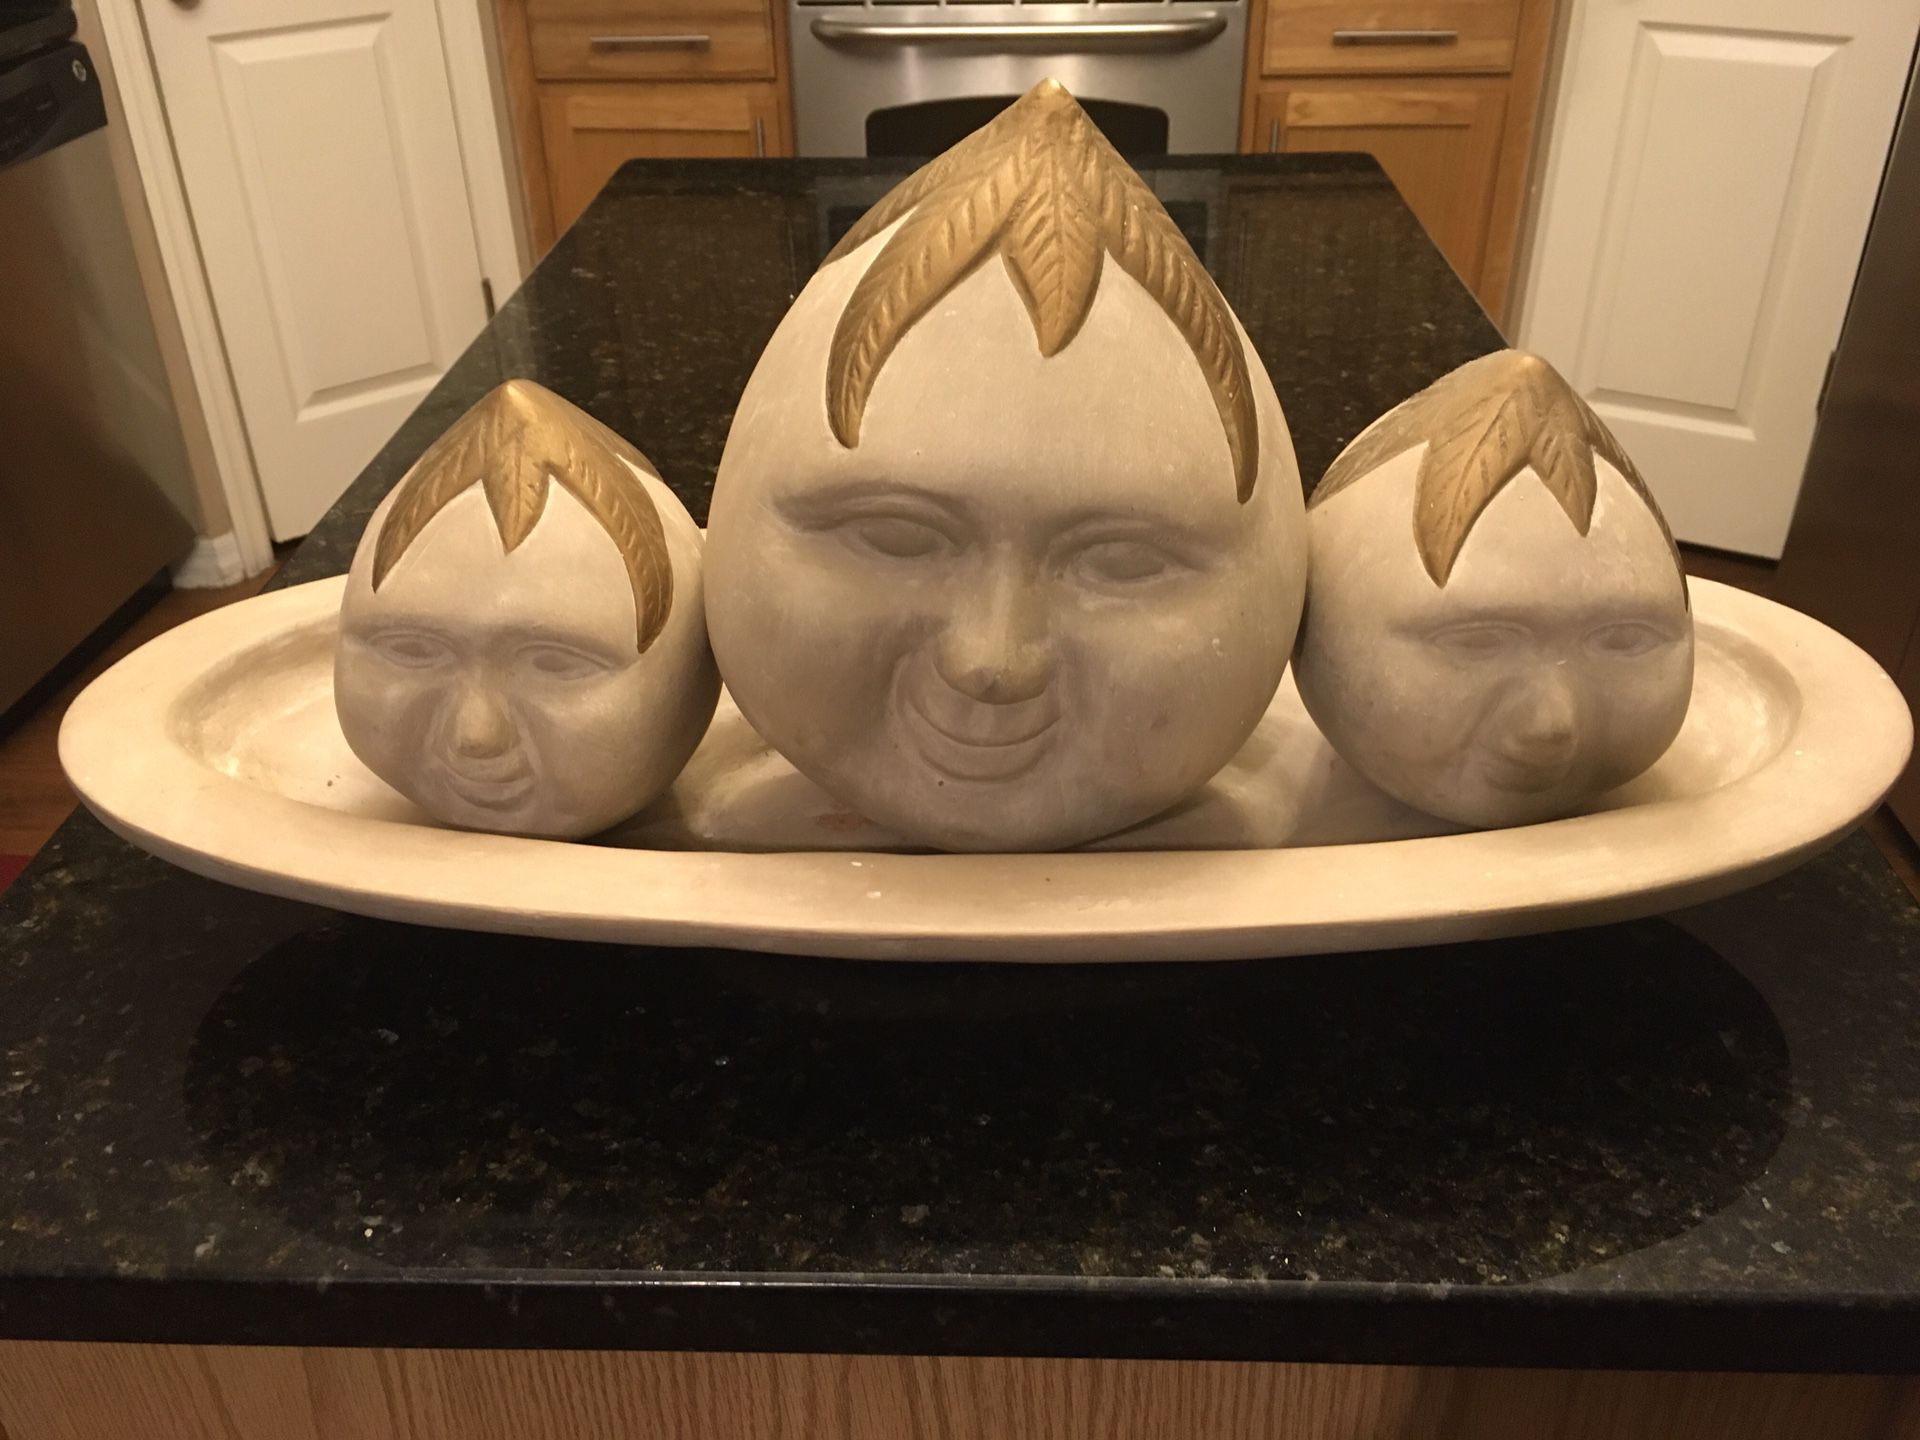 Unique heavy decorative pottery 3 faces/ heads on a platter